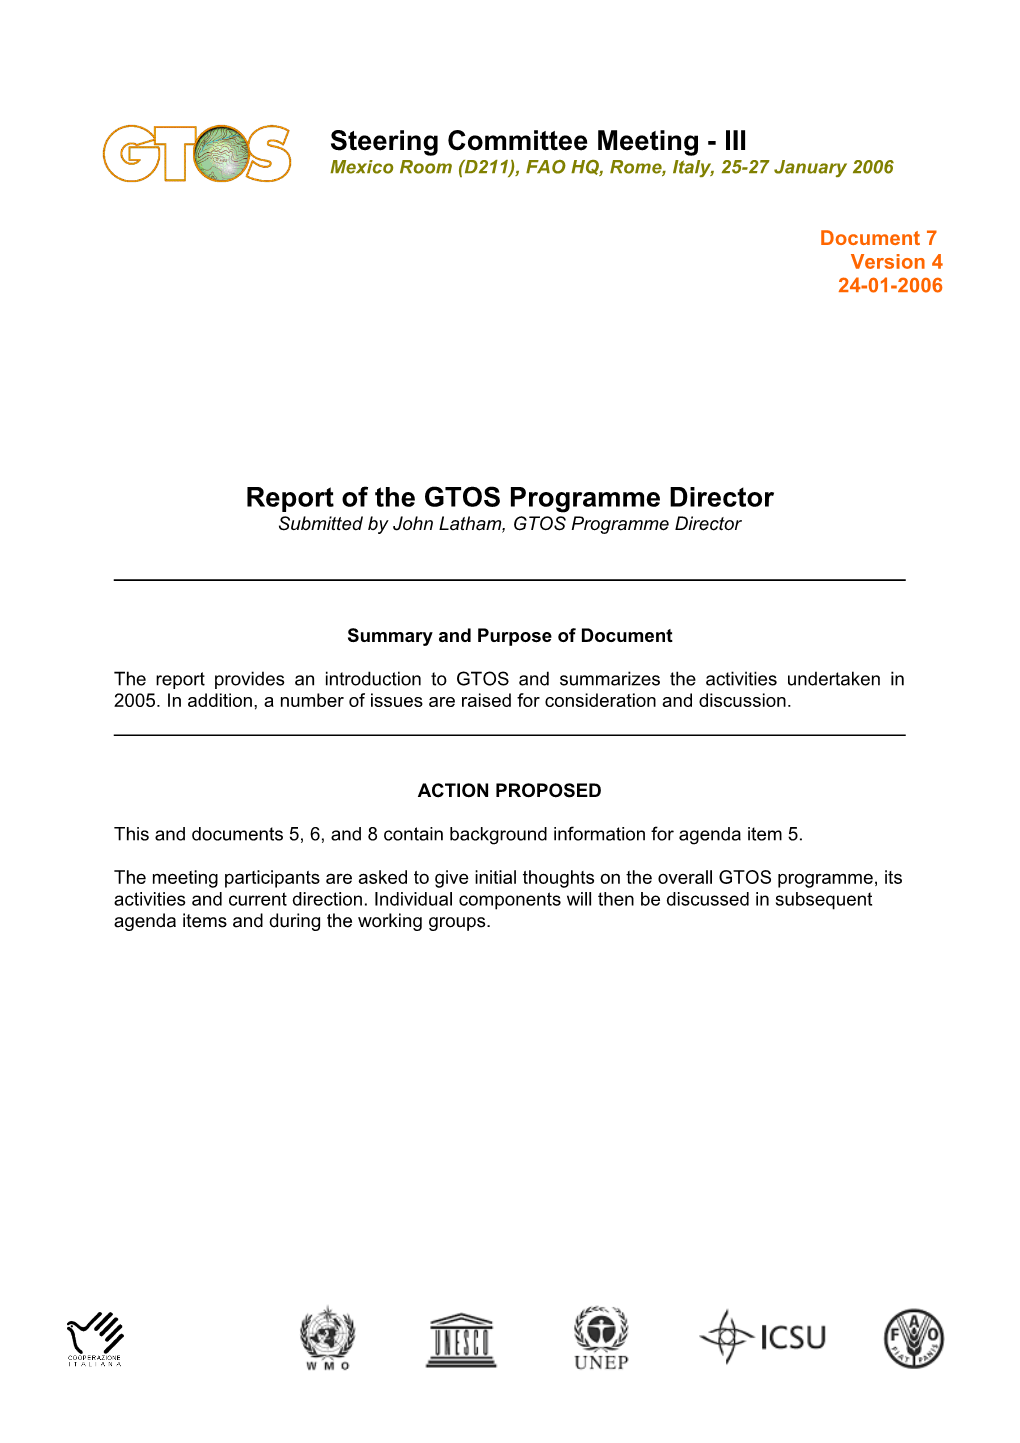 Director's Report to GCOS Steering Committee